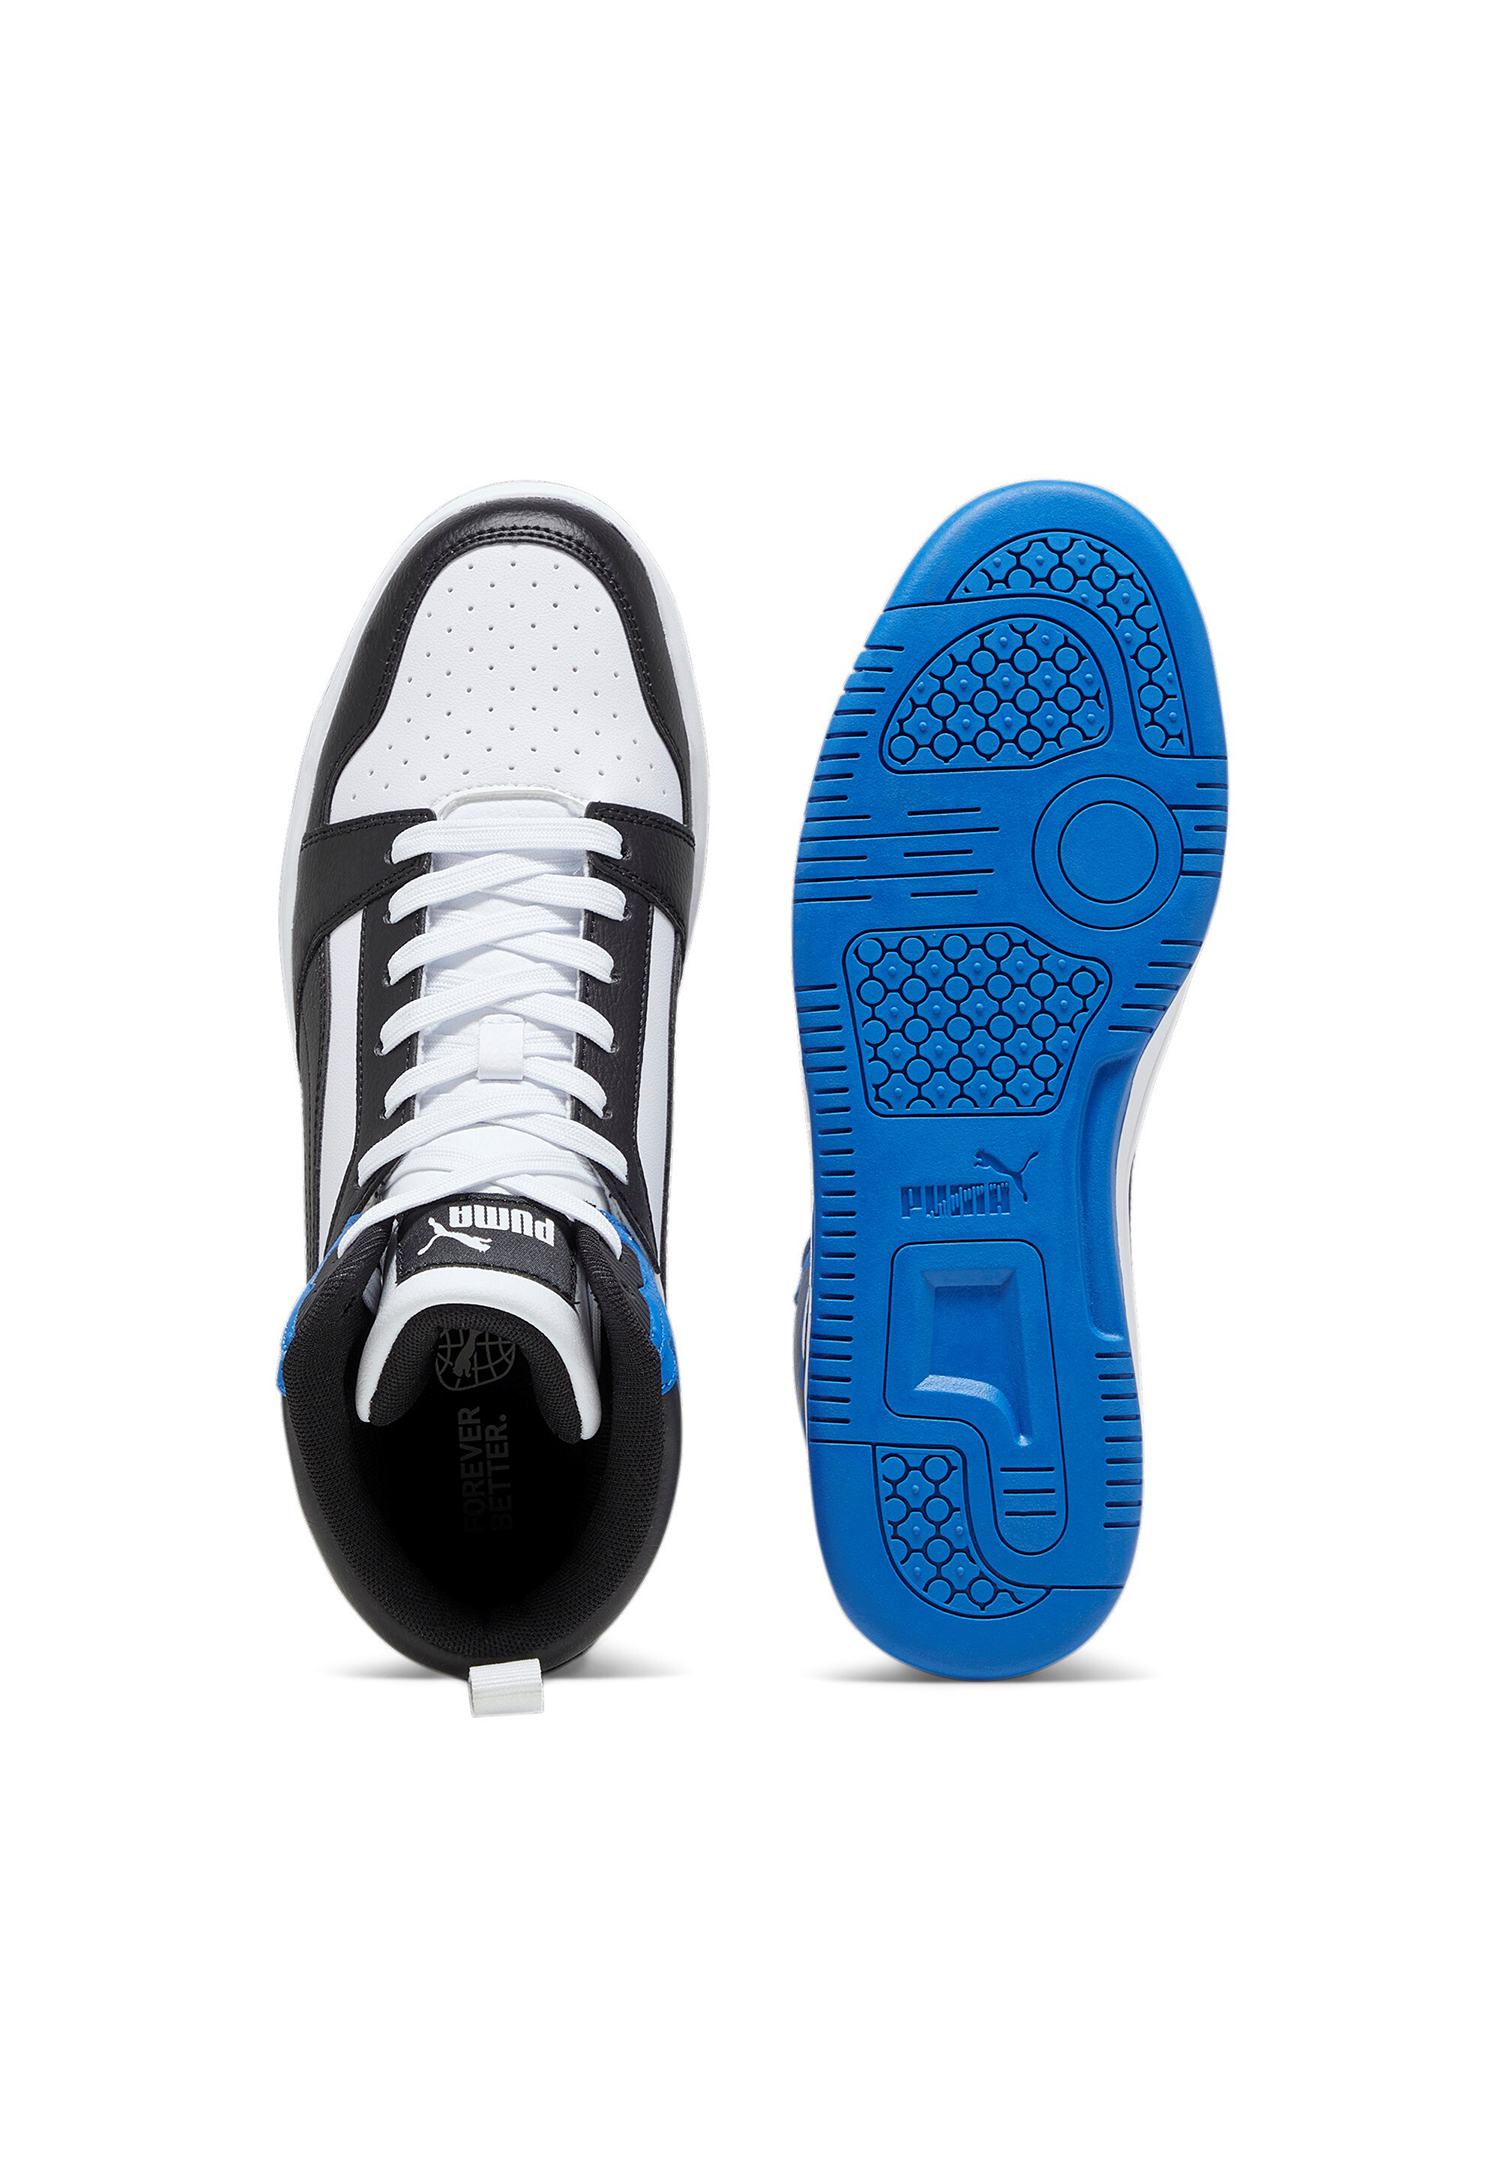 Puma Rebound v6 Hoher Sneaker Stiefel Boots Herren Sneaker 392326 10 weiss blau